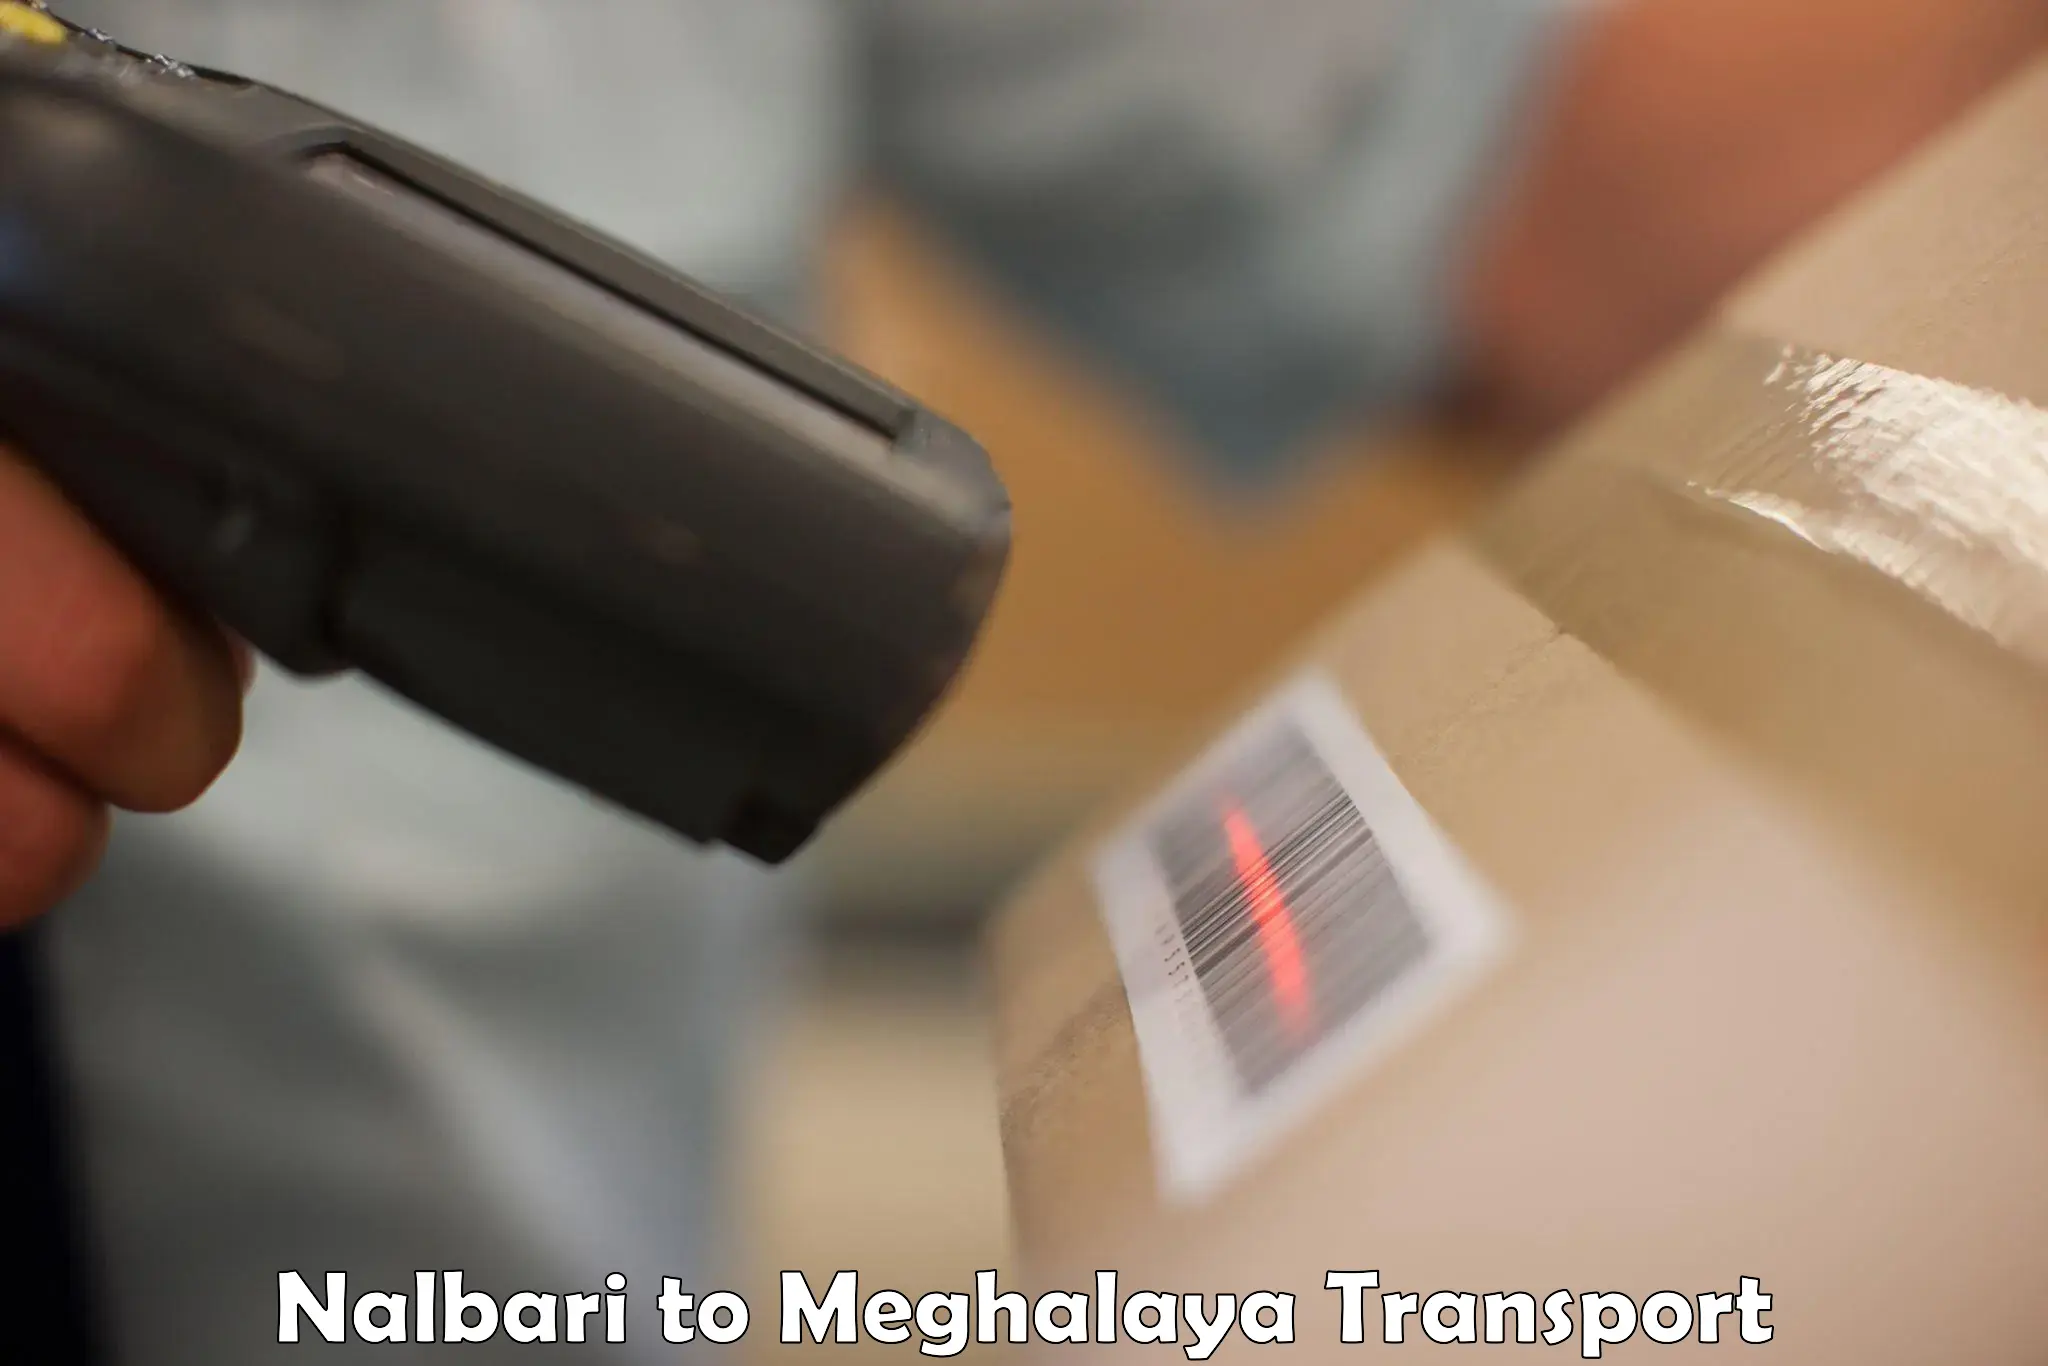 Cargo transport services in Nalbari to Jaintia Hills